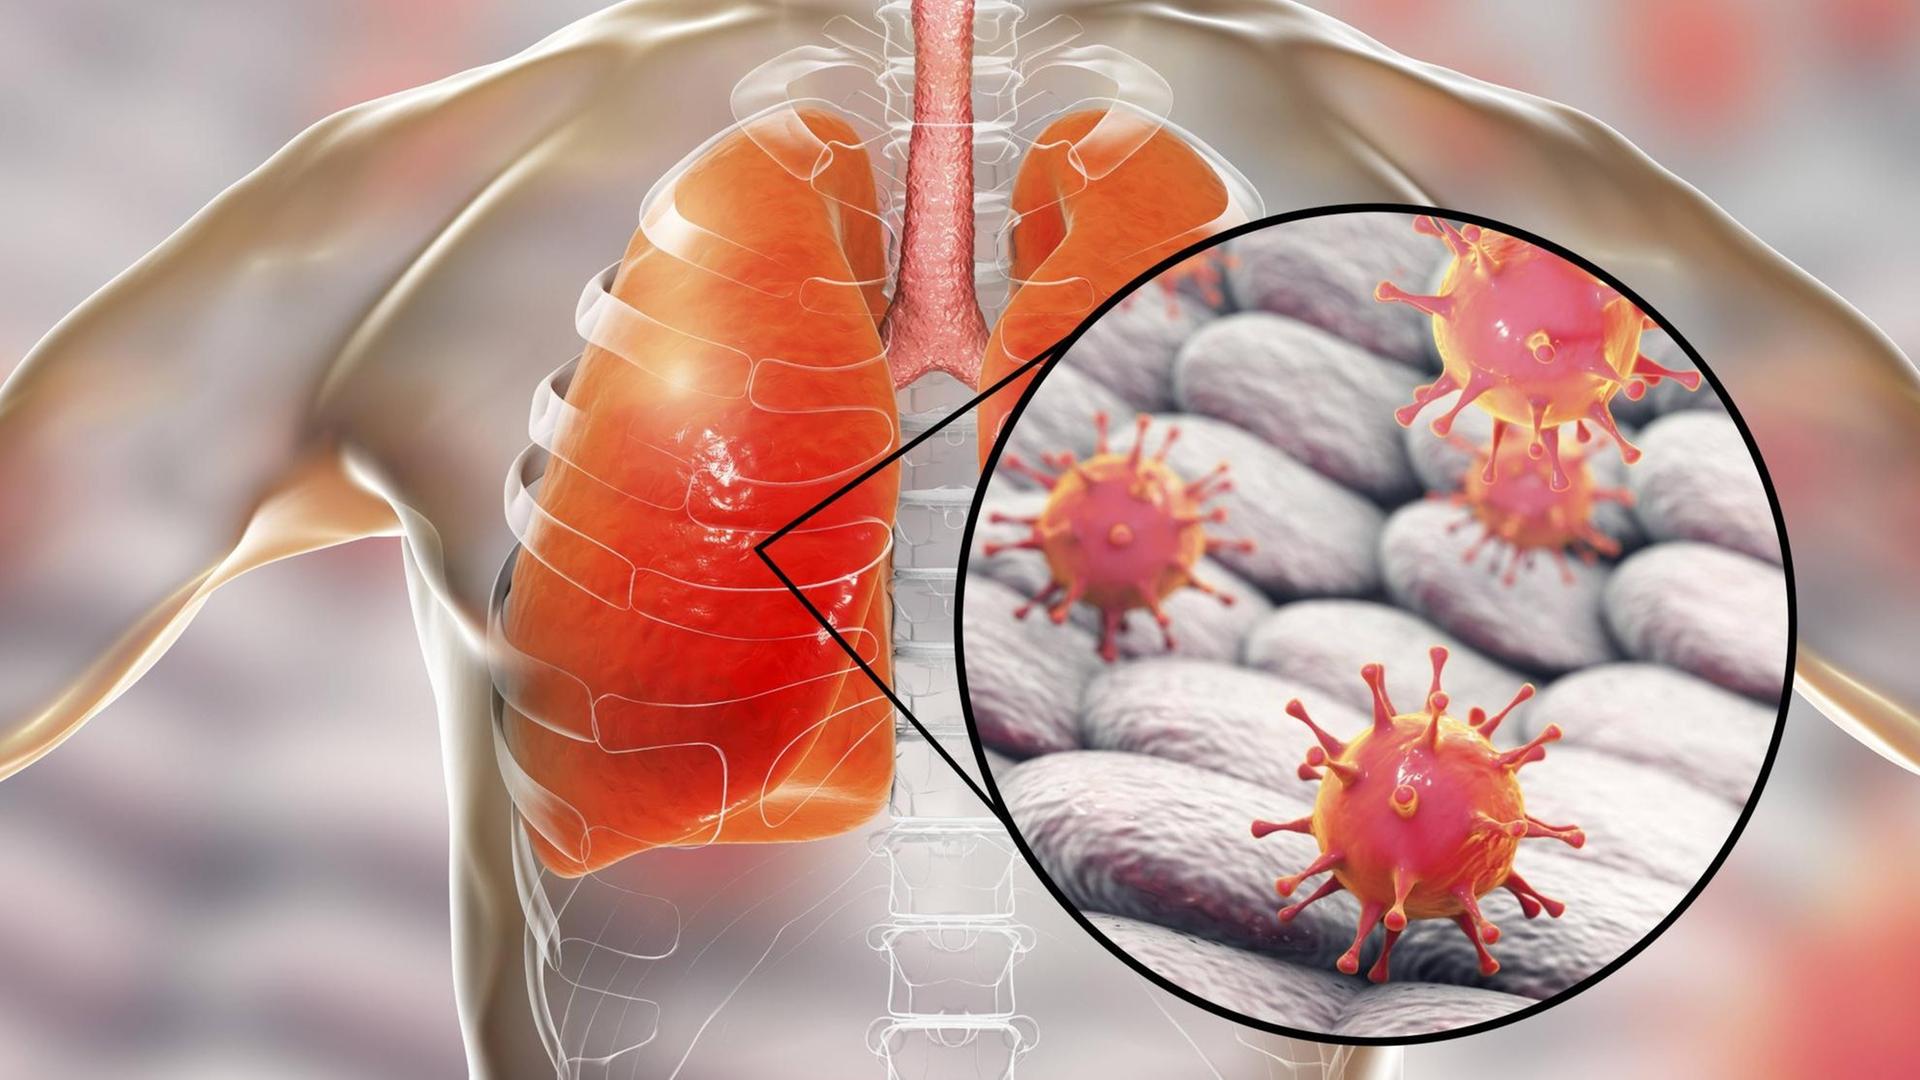 Illustrative Darstellung einer viralen Lungentzündung mit Blick in das innere eines Menschen, die von Coronaviren verursacht werden kann.